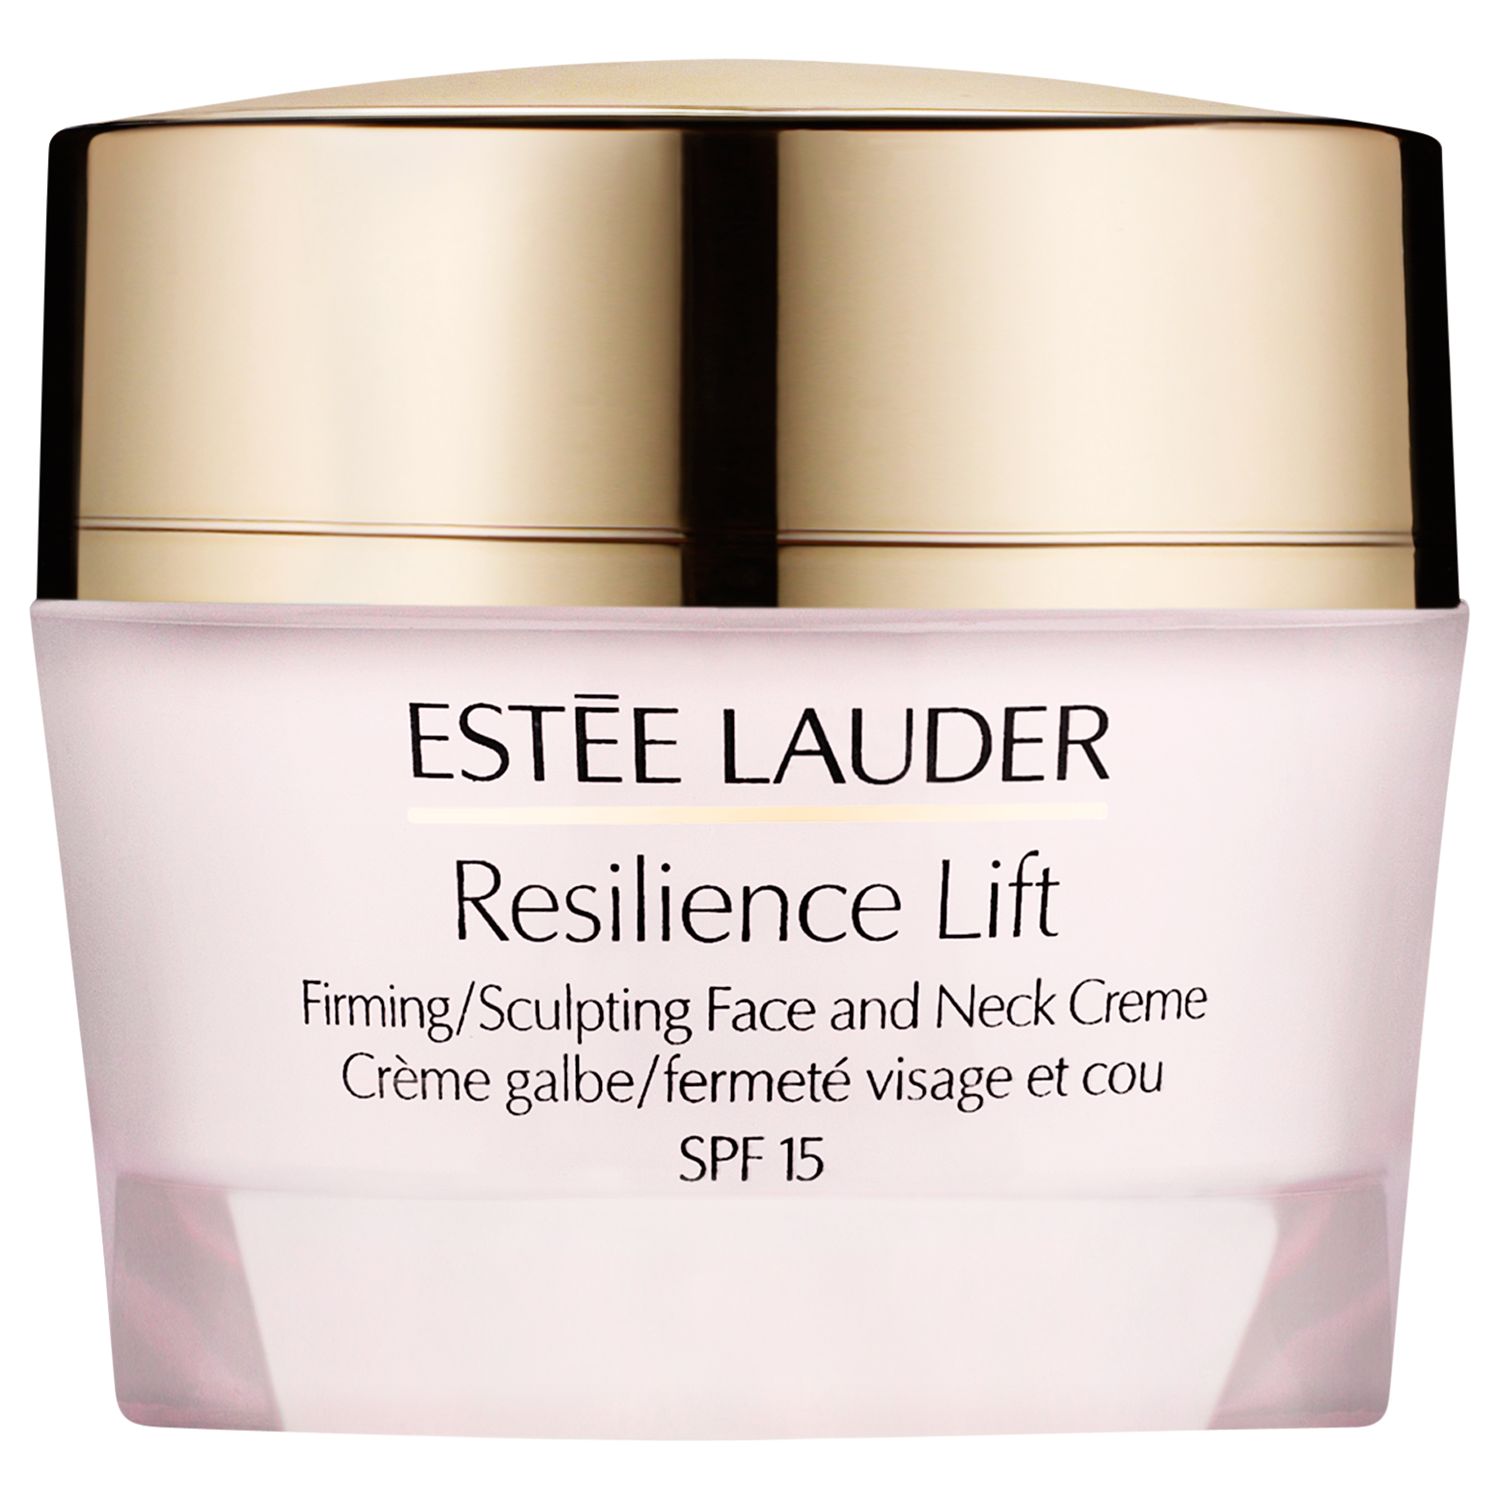 Estée Lauder Resilience Lift Firming/Sculpture Face and Neck Crème SPF15, 50ml